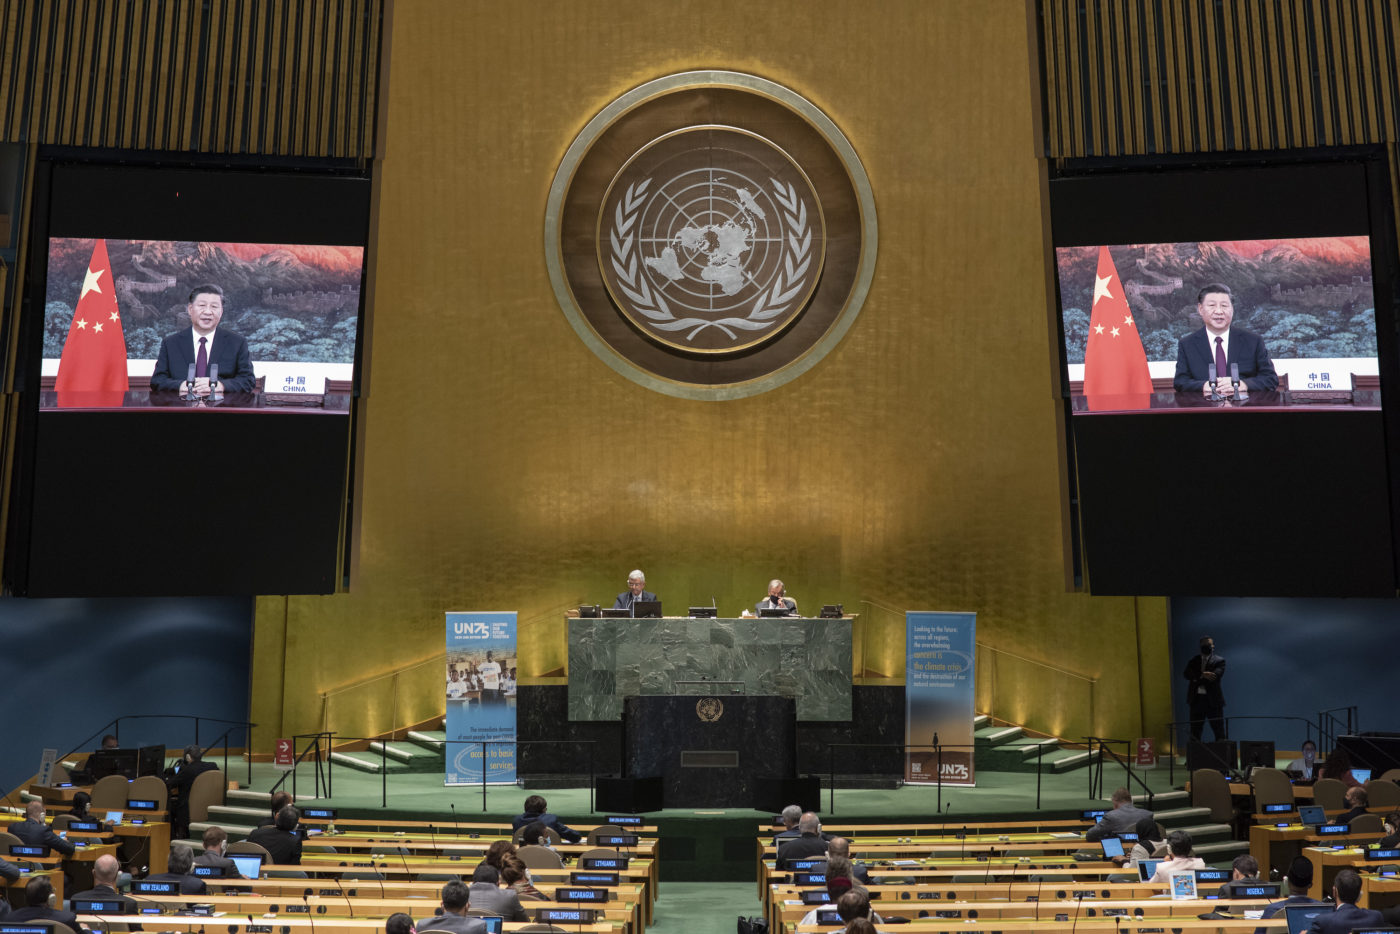 <p>Xi Jinping discursa em uma reunião de alto nível da Assembleia Geral das Nações Unidas em 21 de setembro (Imagem: Multimídia da ONU)</p>